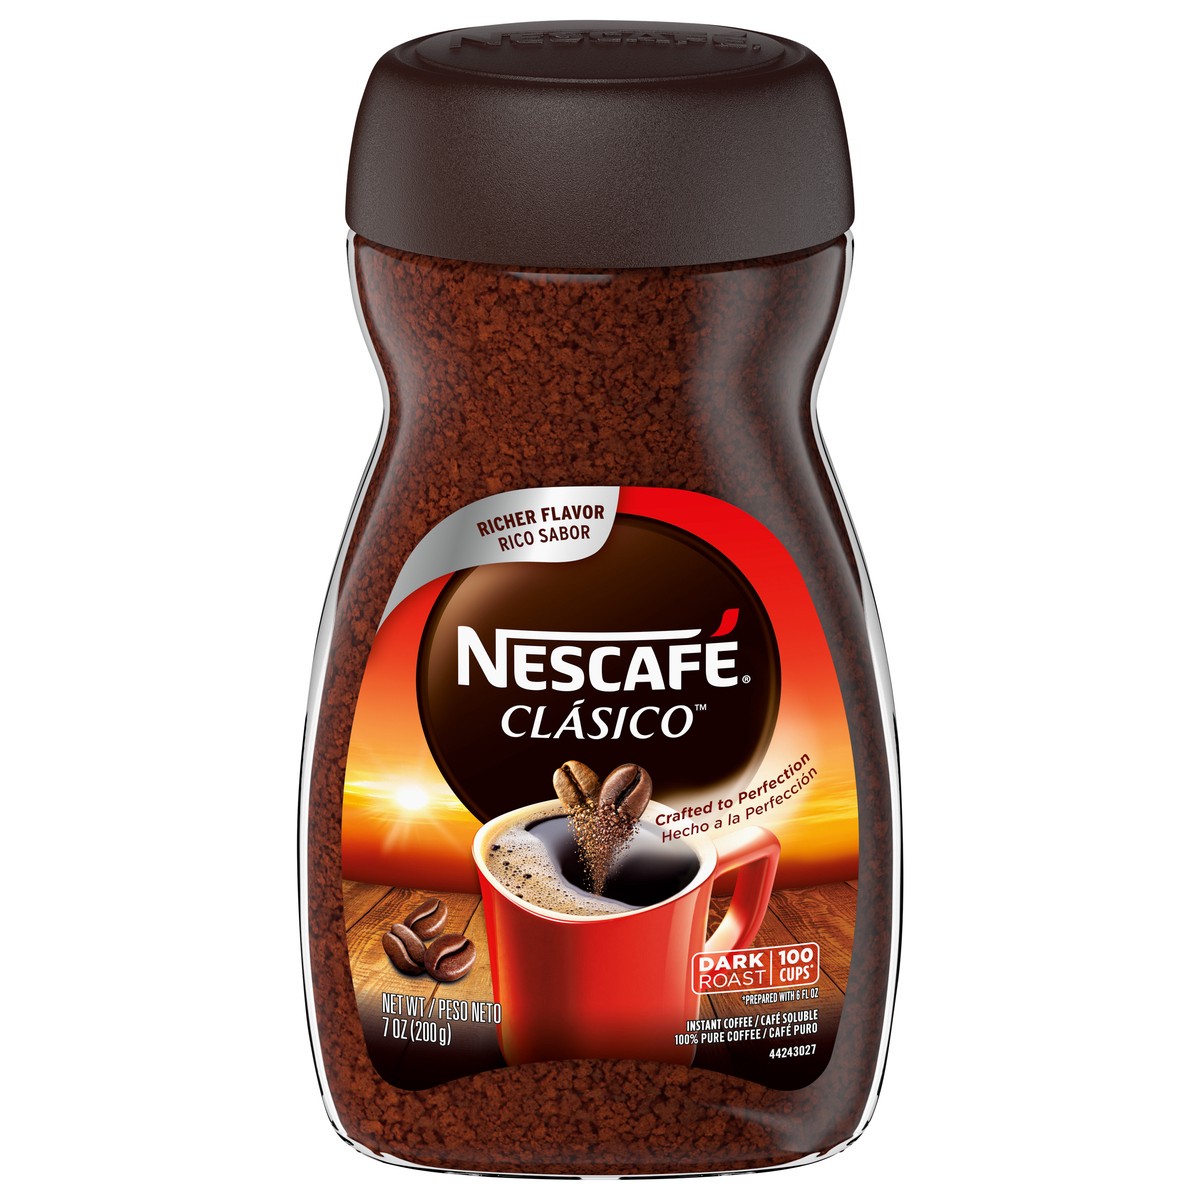 slide 1 of 9, Nescafe Clasico Dark Roast Coffee - 7oz, 7 oz